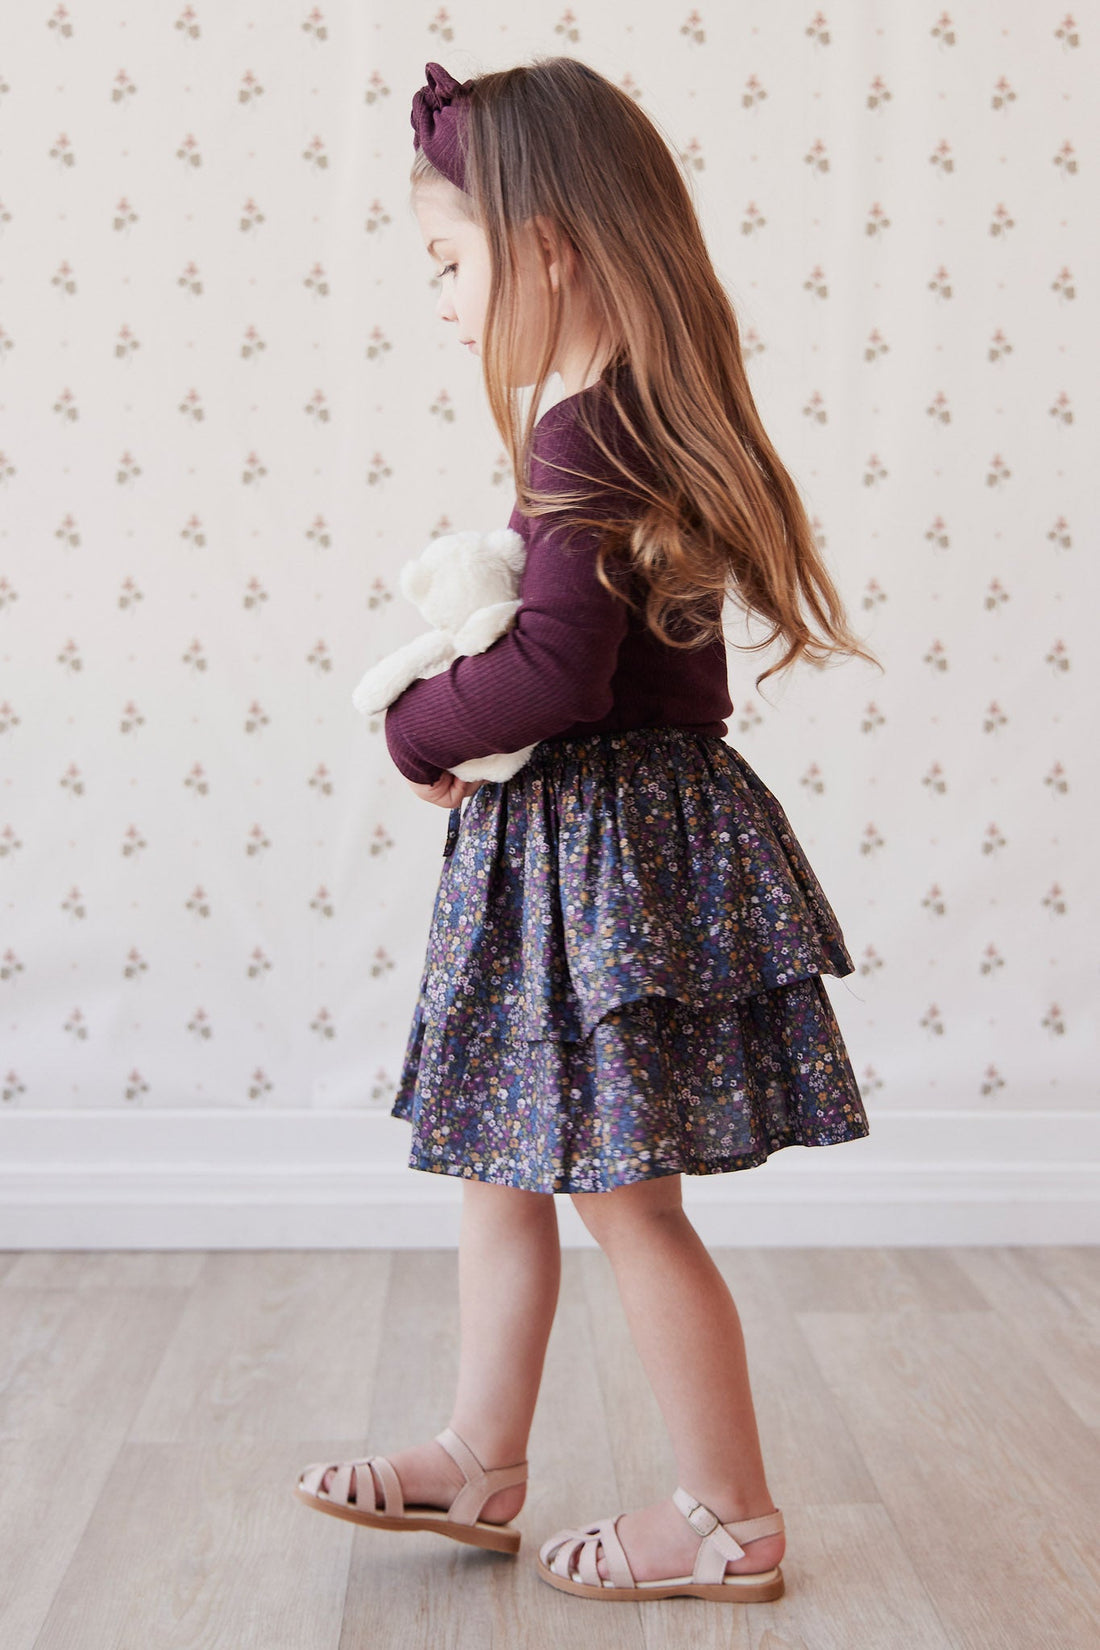 Organic Cotton Heidi Skirt - Winter Iris Childrens Skirt from Jamie Kay USA